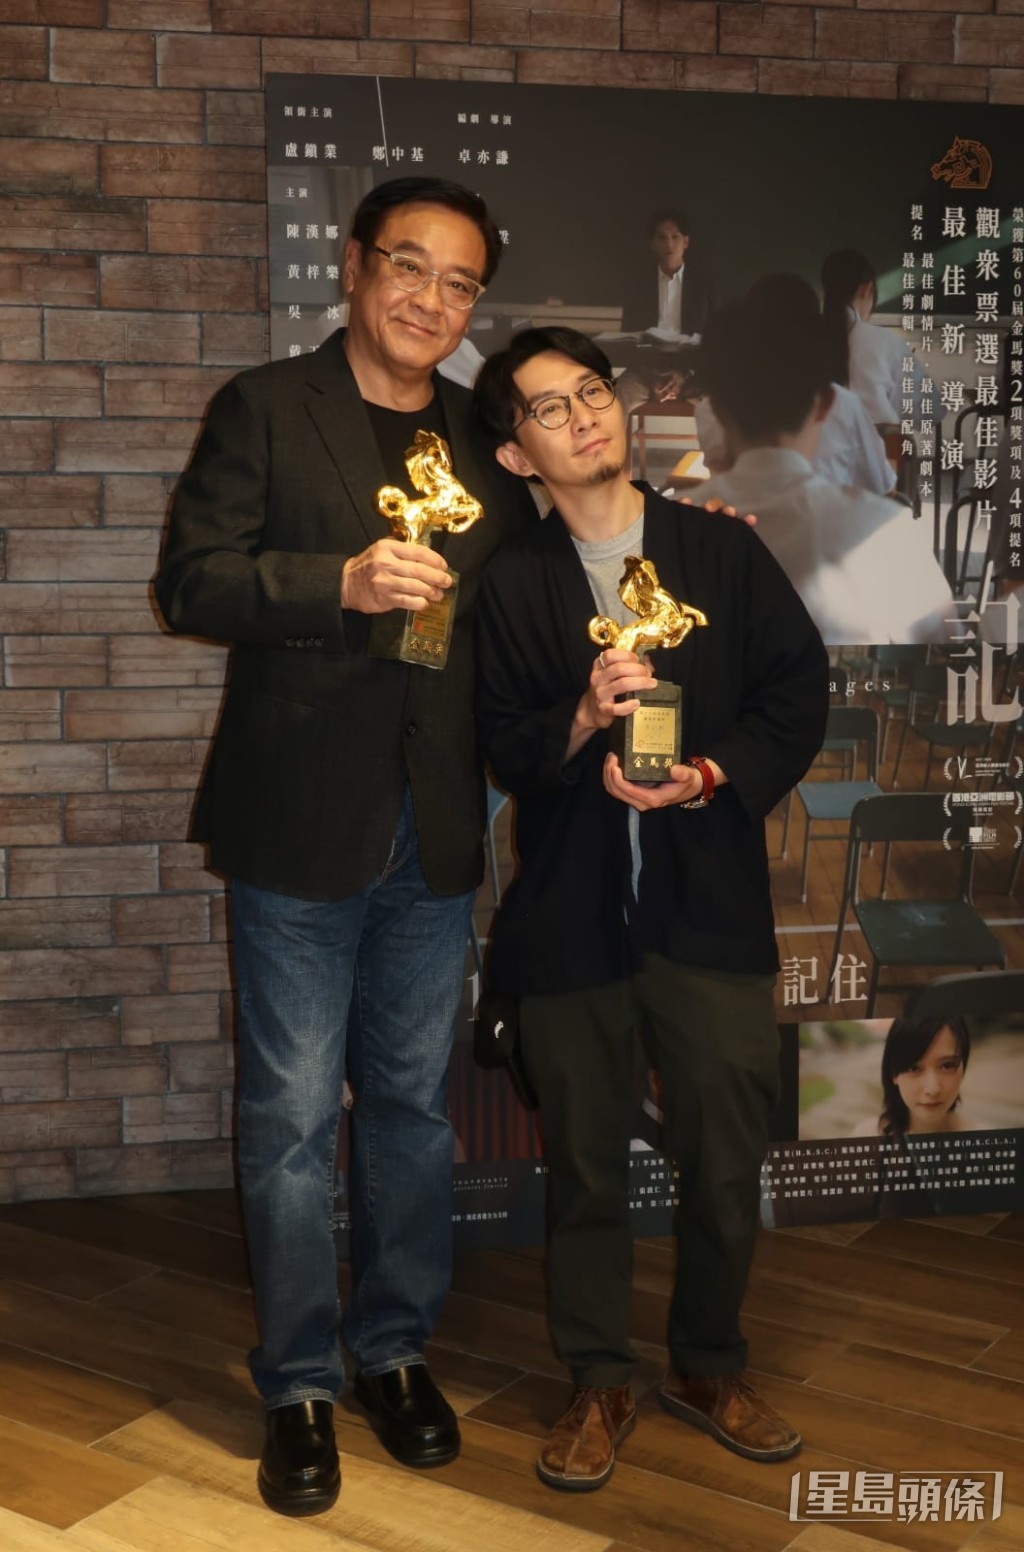 卓亦謙早前已奪得「第60屆金馬獎」、「第17屆亞洲電影大獎」及「2023年度香港電影導演會年度大獎」的導演獎項。